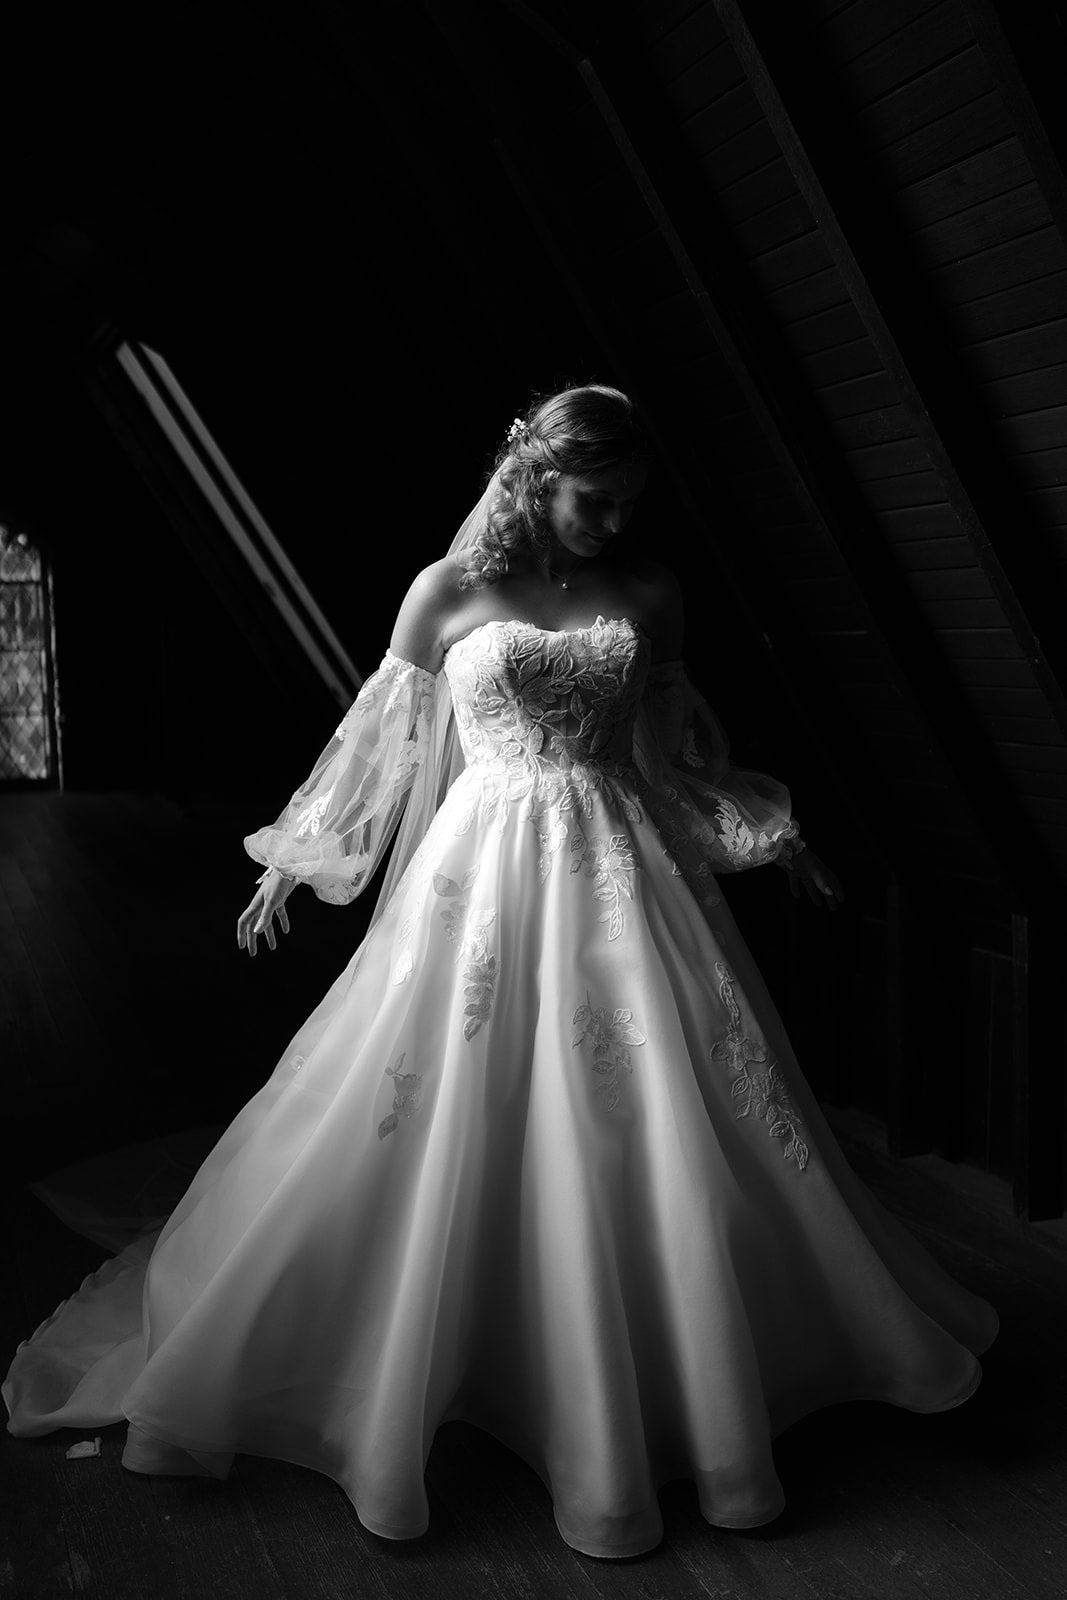 Bride twirls in her dress at Montsalvat's attic